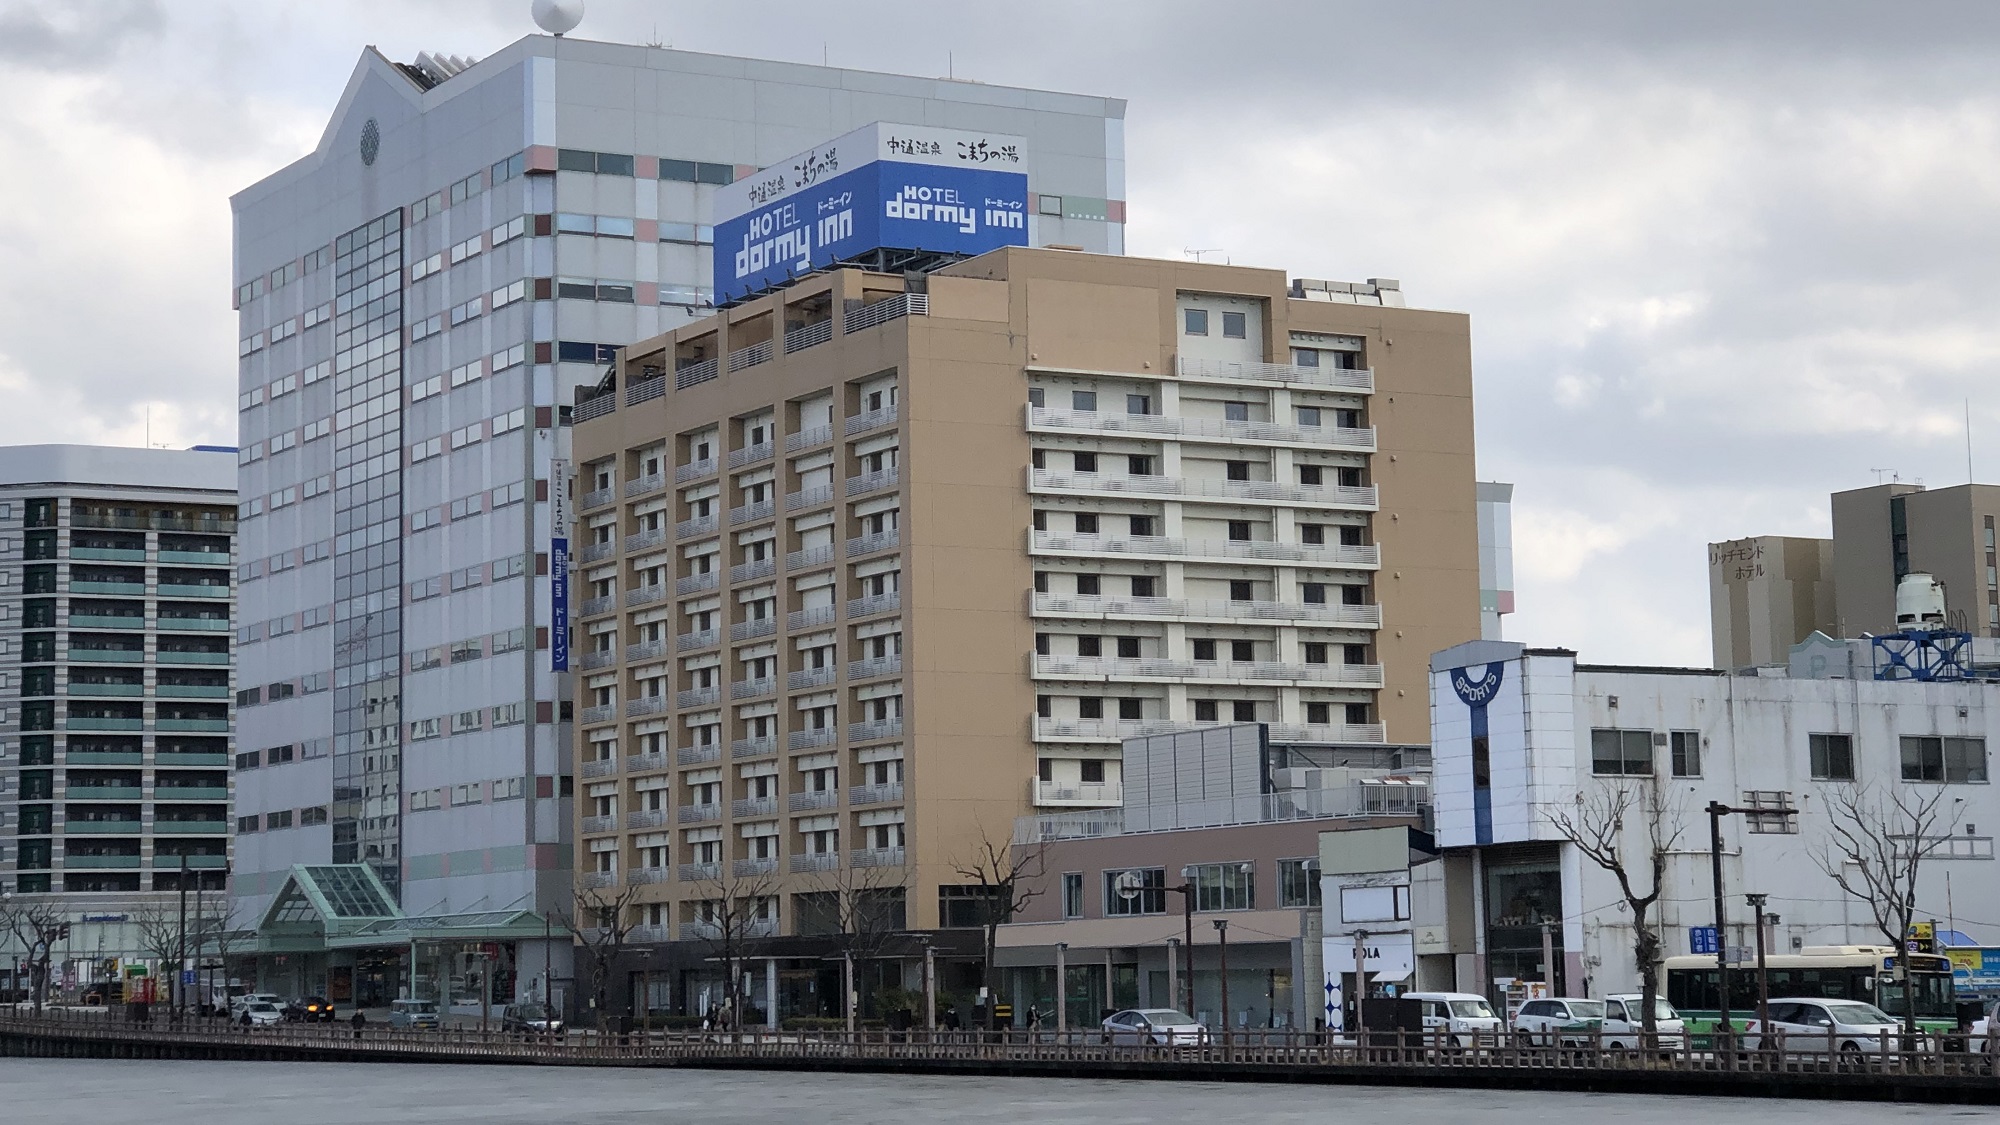 秋田キャッスルホテル